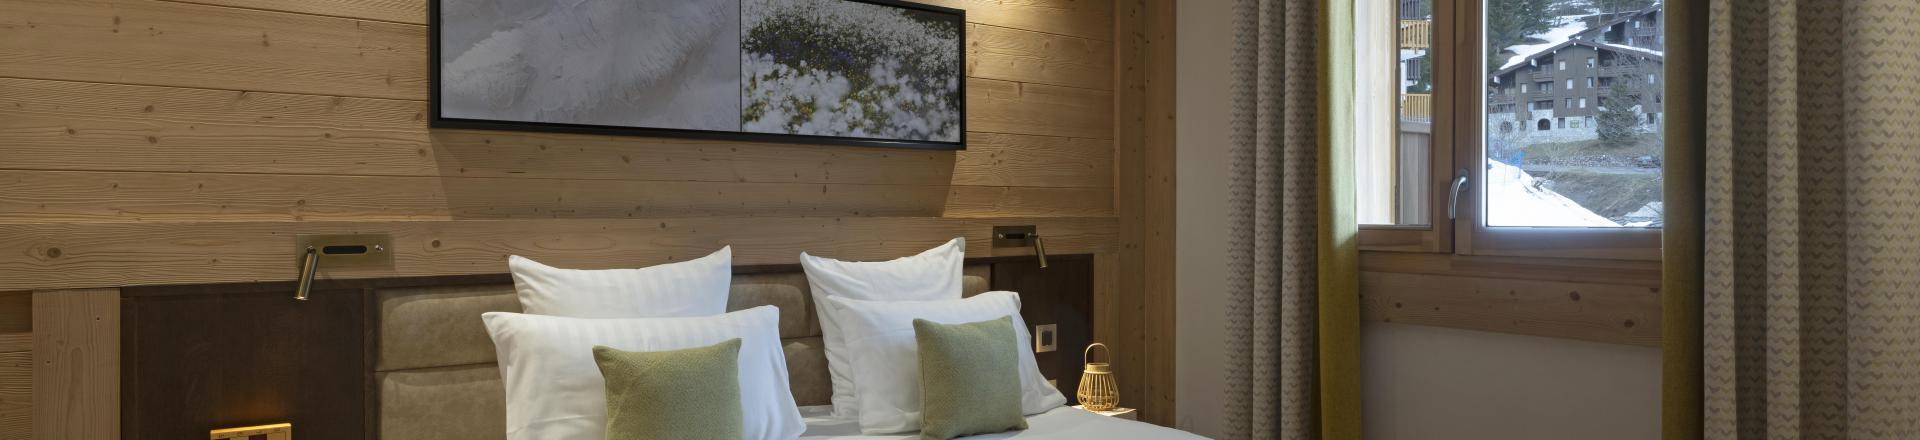 Rent in ski resort 3 room apartment 6 people (confort) - Résidence Anitéa - Valmorel - Bedroom